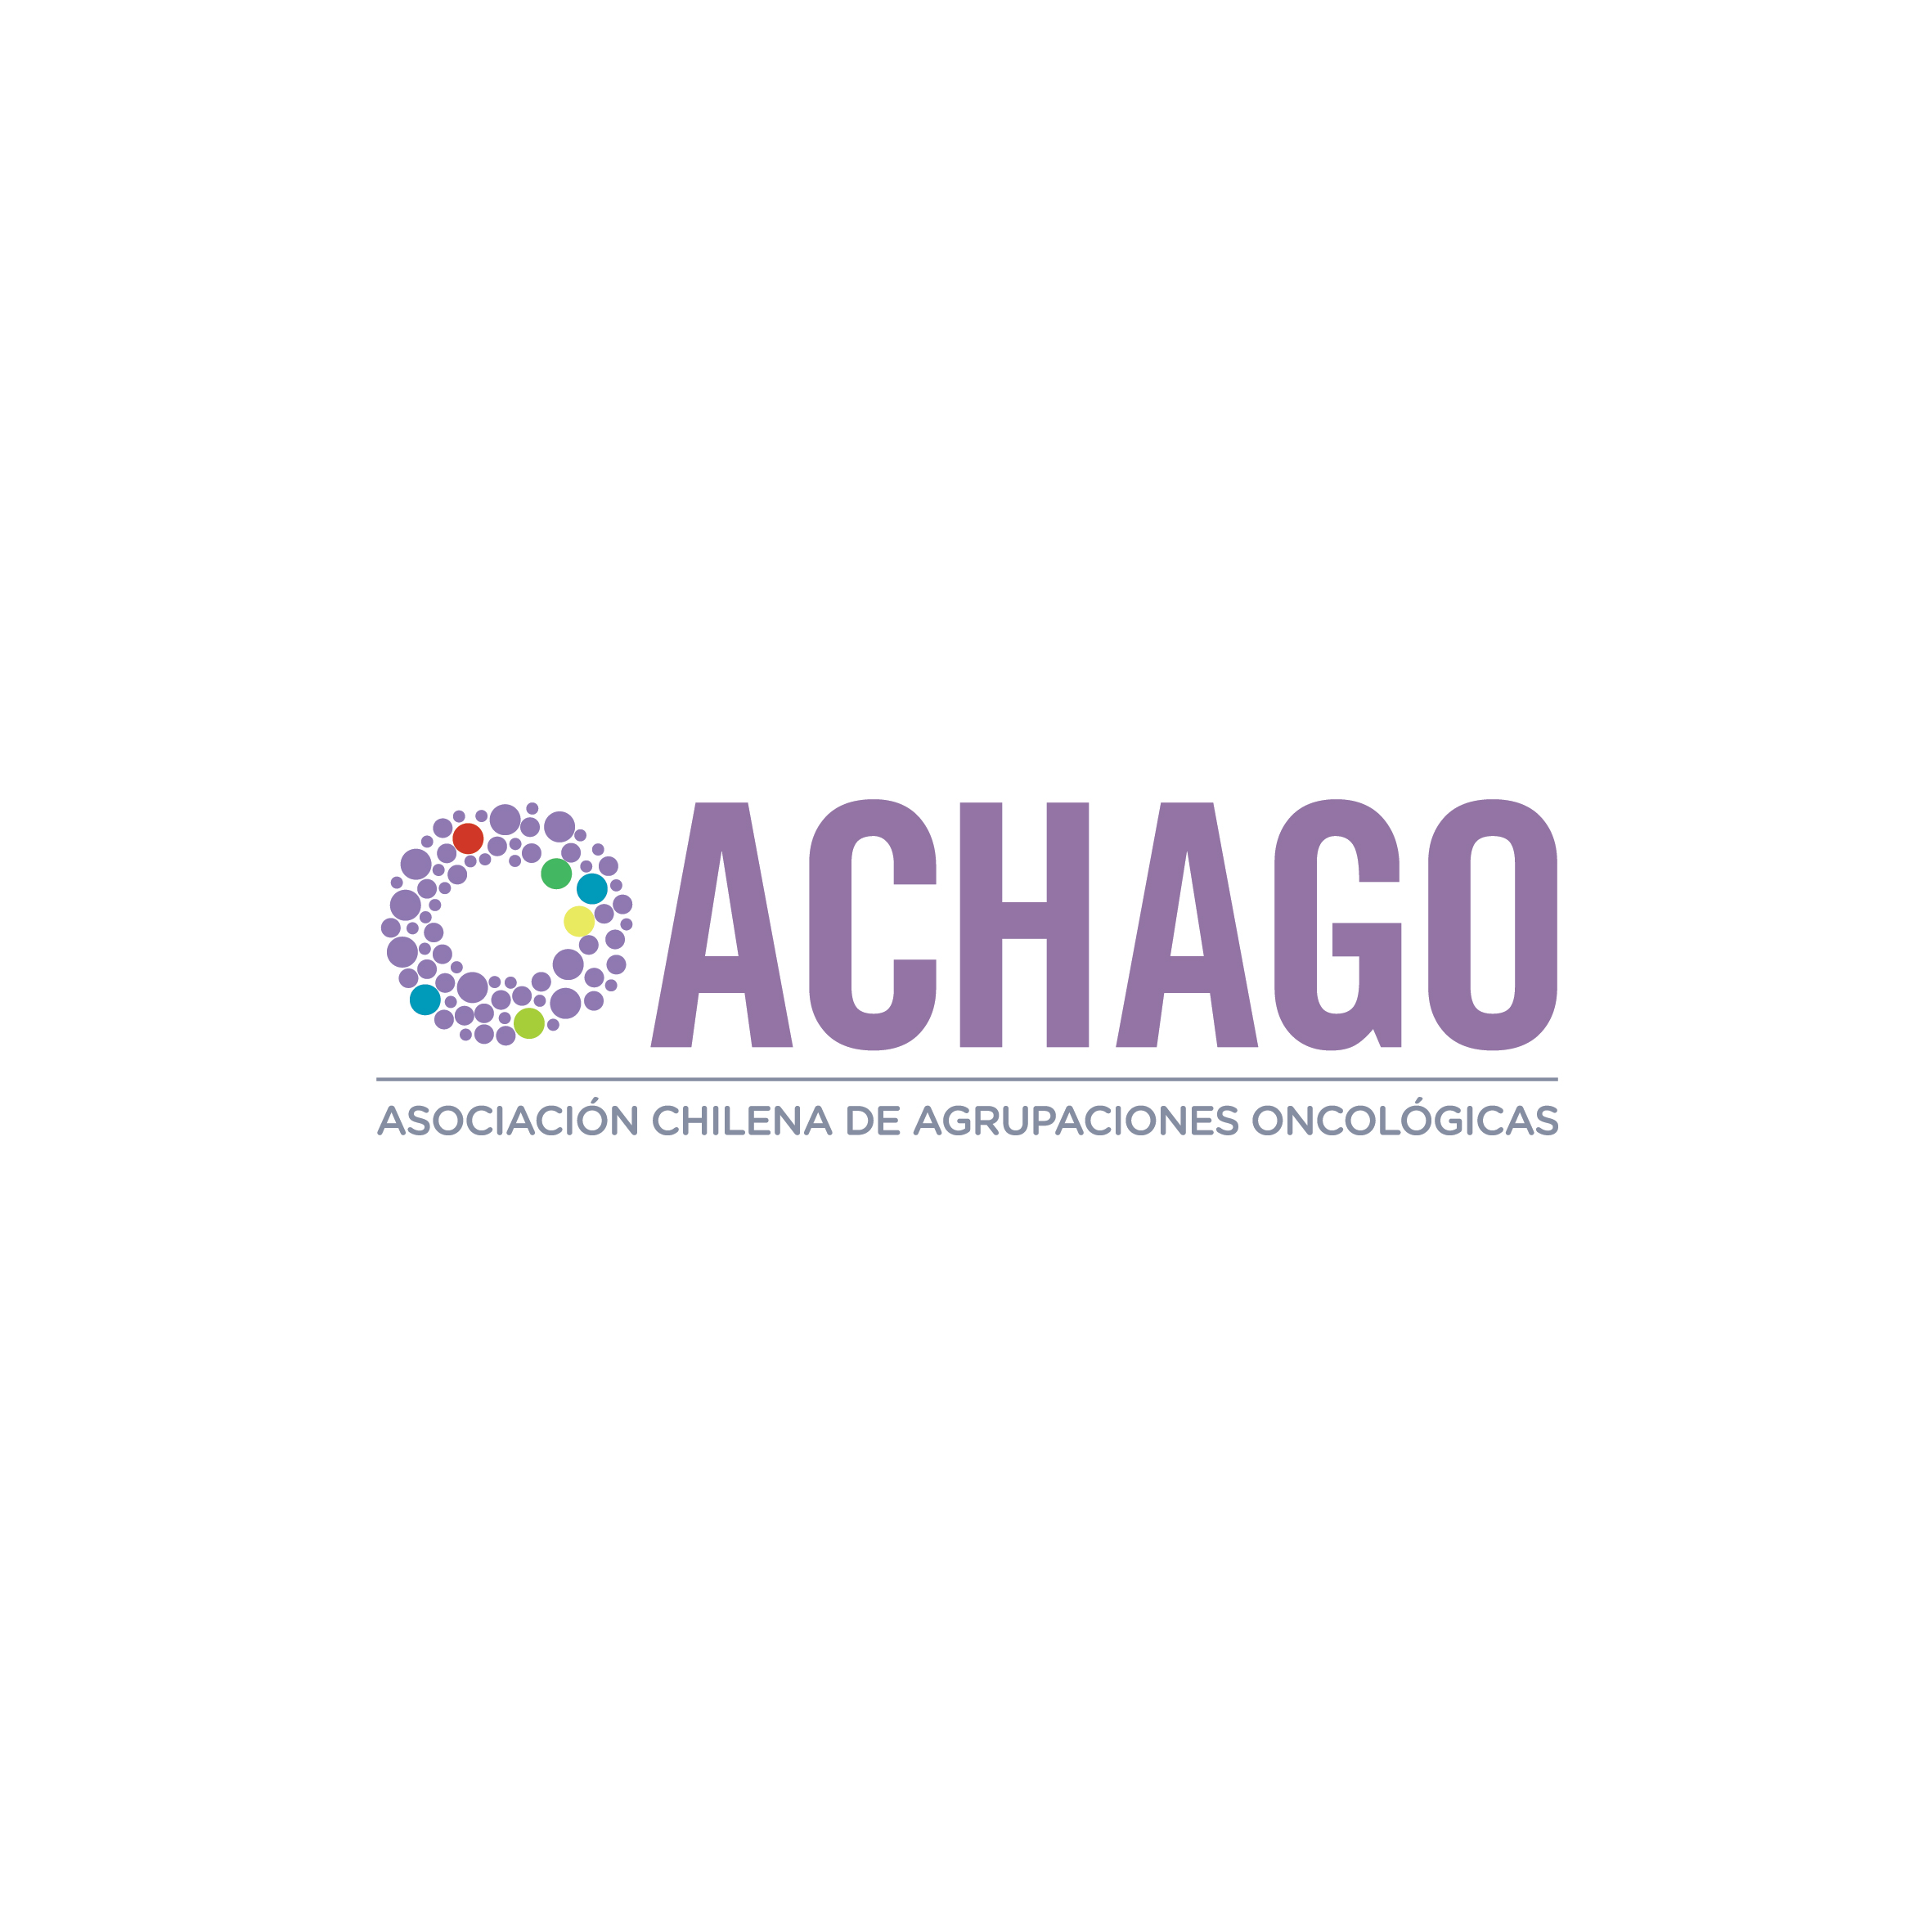 Asociación Chilena de Agrupaciones Oncológicas – ACHAGO